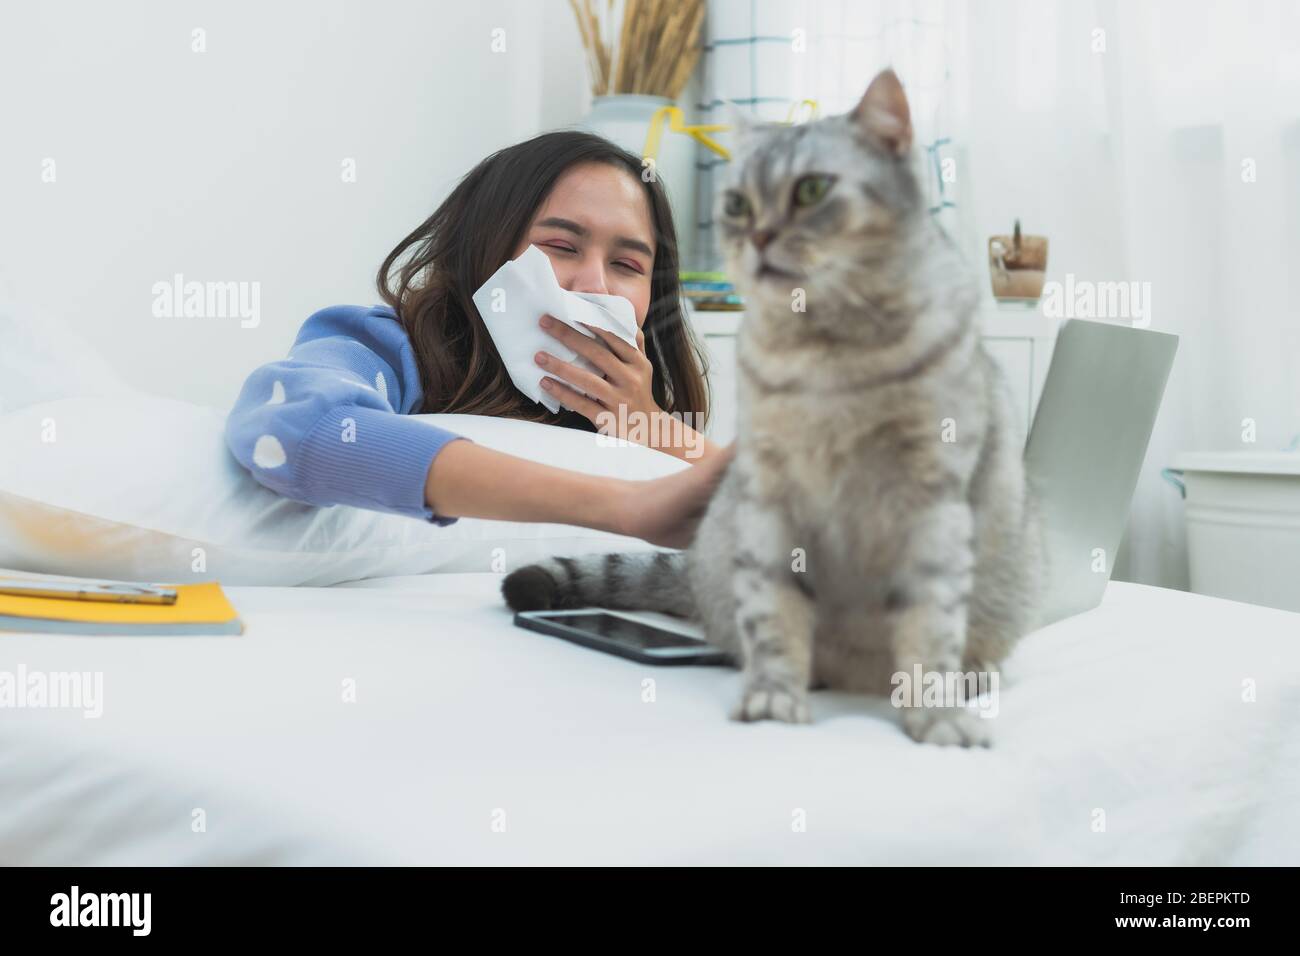 Les allergies chez Cat, les maladies des femmes utilisent des tissus pour fermer le nez afin de protéger le spot comme travaillant sur un ordinateur portable dans la chambre Banque D'Images